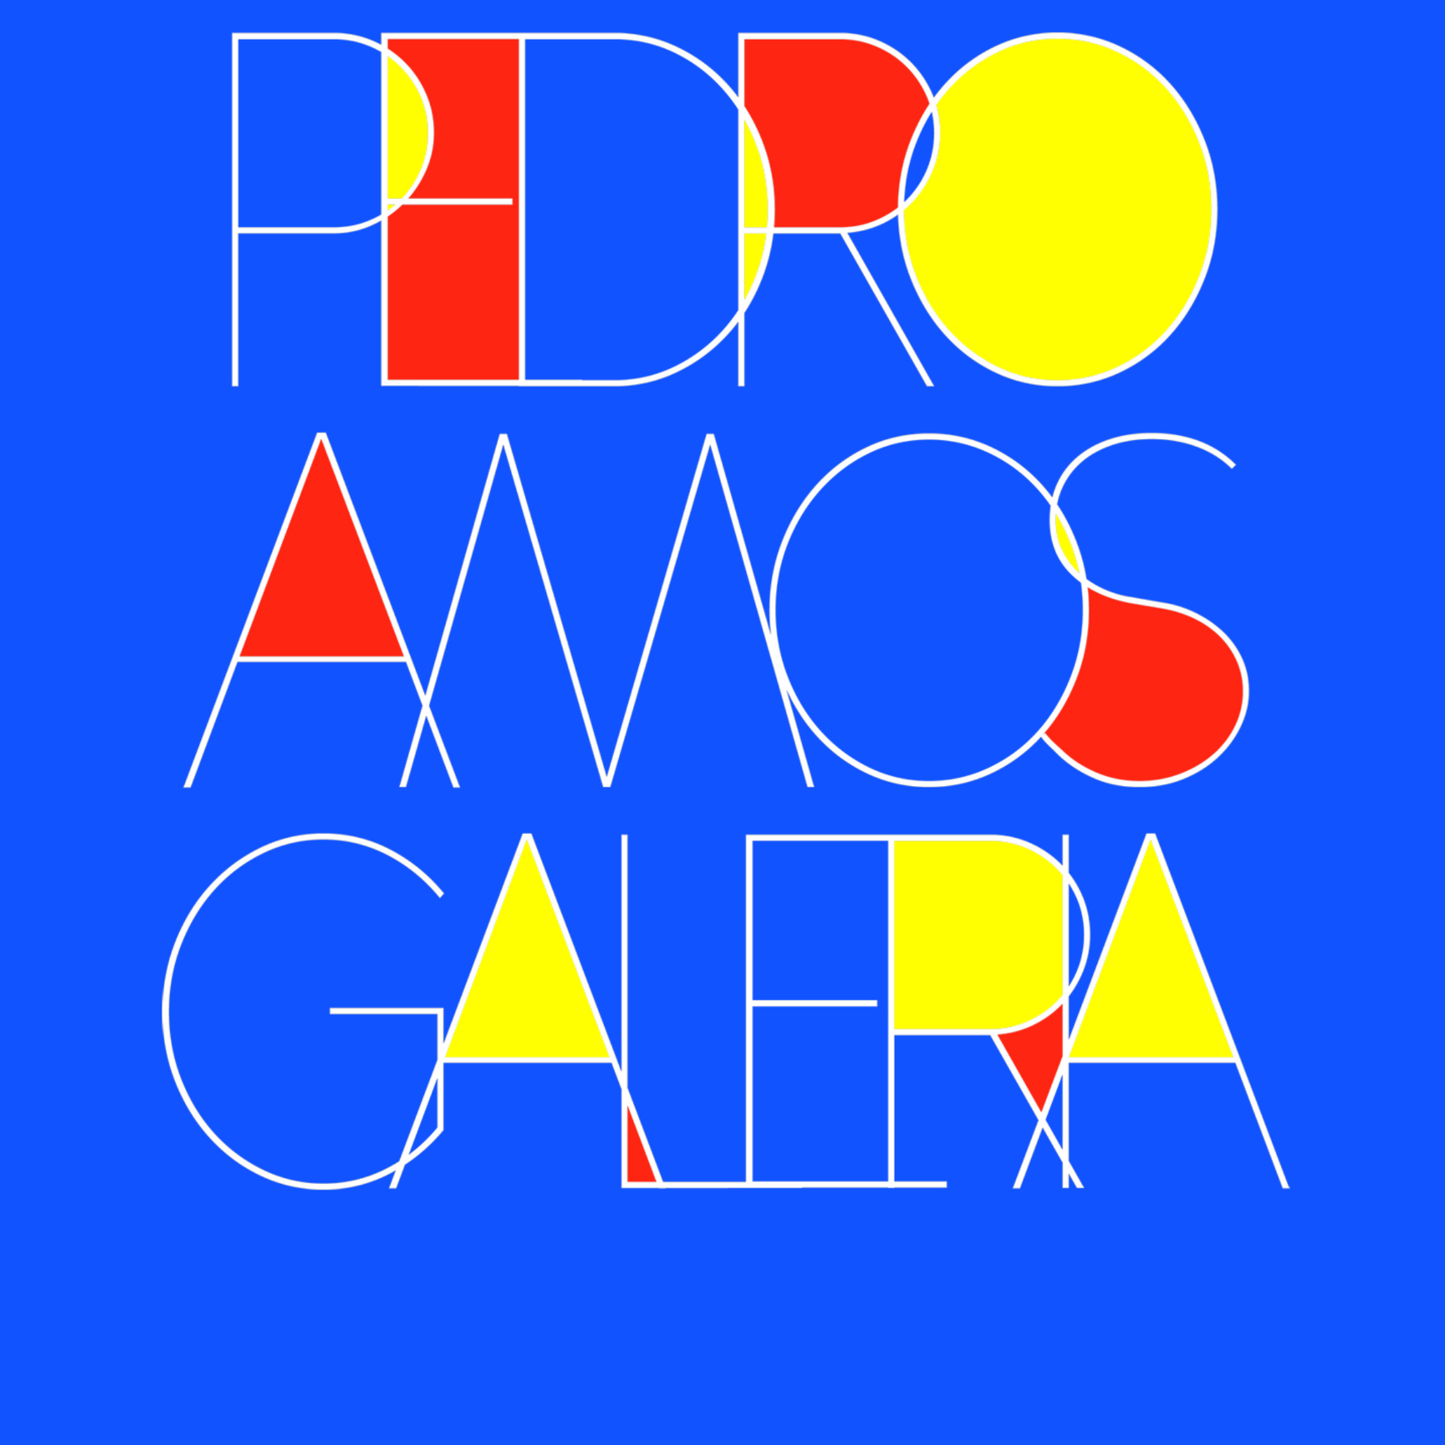 "Pedro AMOS Galeria" - Blue Contemporary Logo - T-Shirt